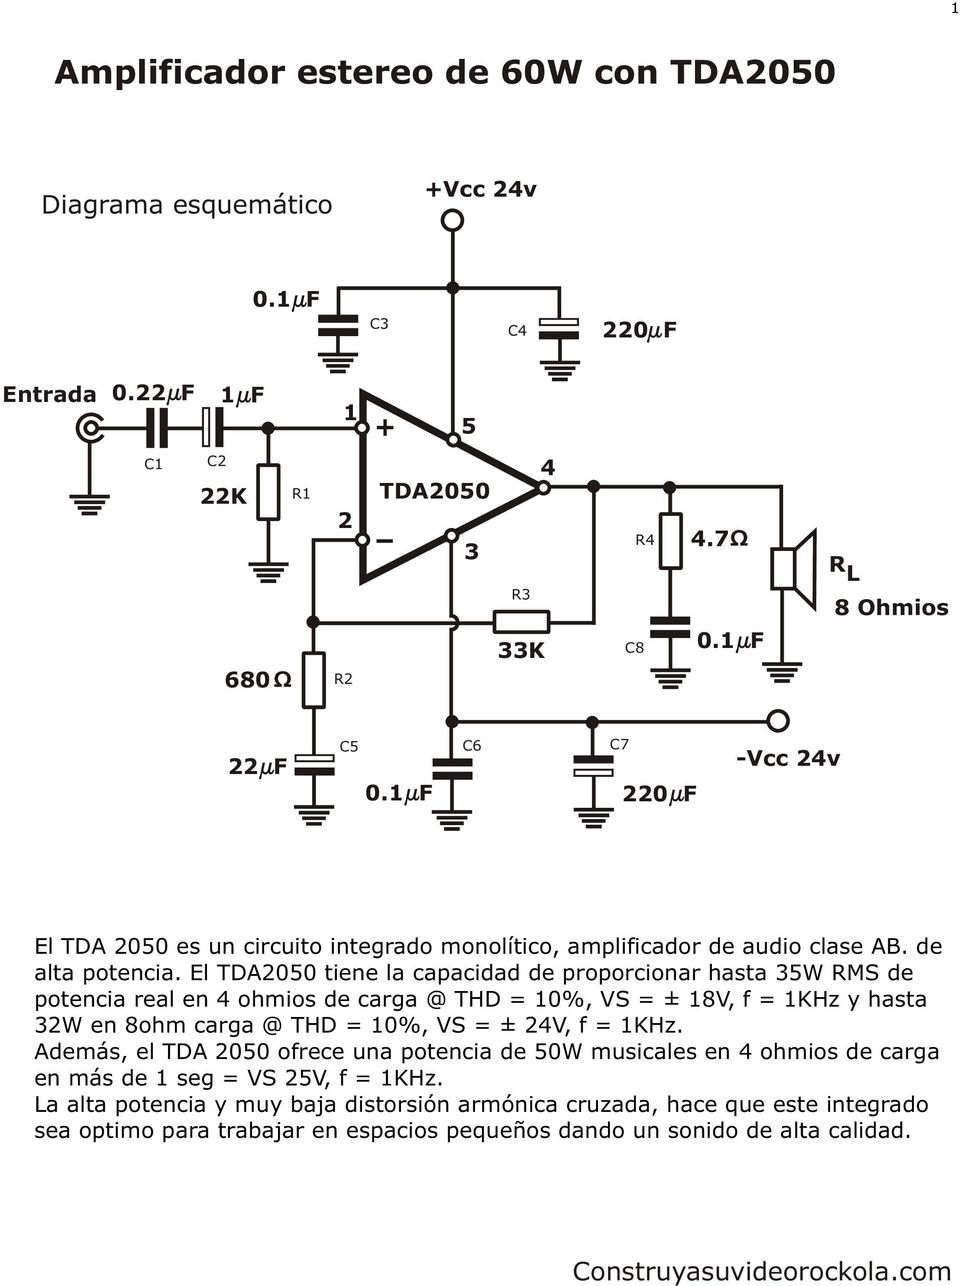 El TDA2050 tiene la capacidad de proporcionar hasta 35W MS de potencia real en 4 ohmios de carga @ THD = 10%, VS = ± 18V, f = 1KHz y hasta 32W en 8ohm carga @ THD = 10%, VS = ± 24V, f =